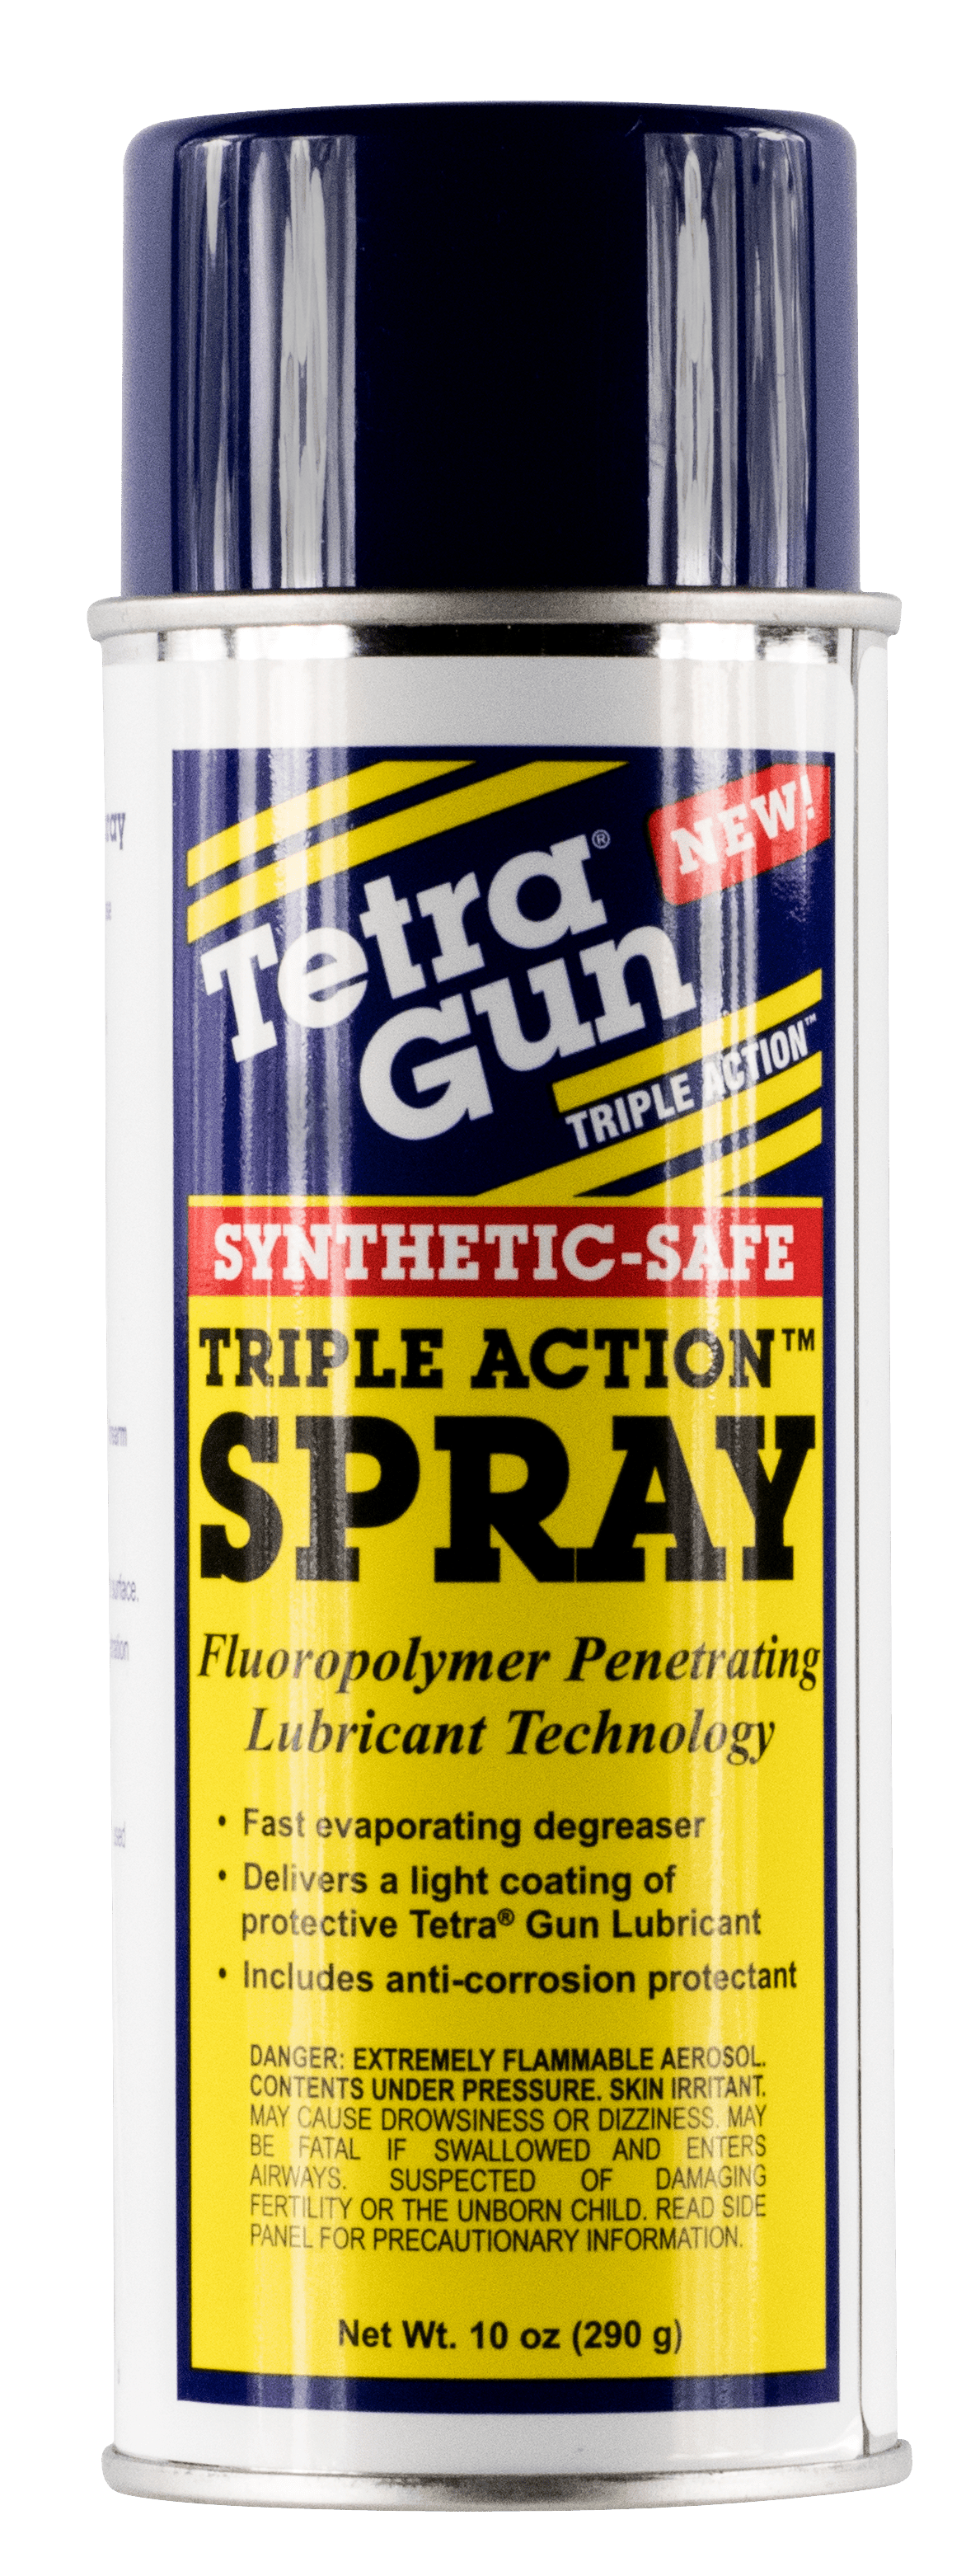 Tetra Gun Tetra Gun Spray Ii Clp Spray 10 Oz. Shooting Gear and Acc